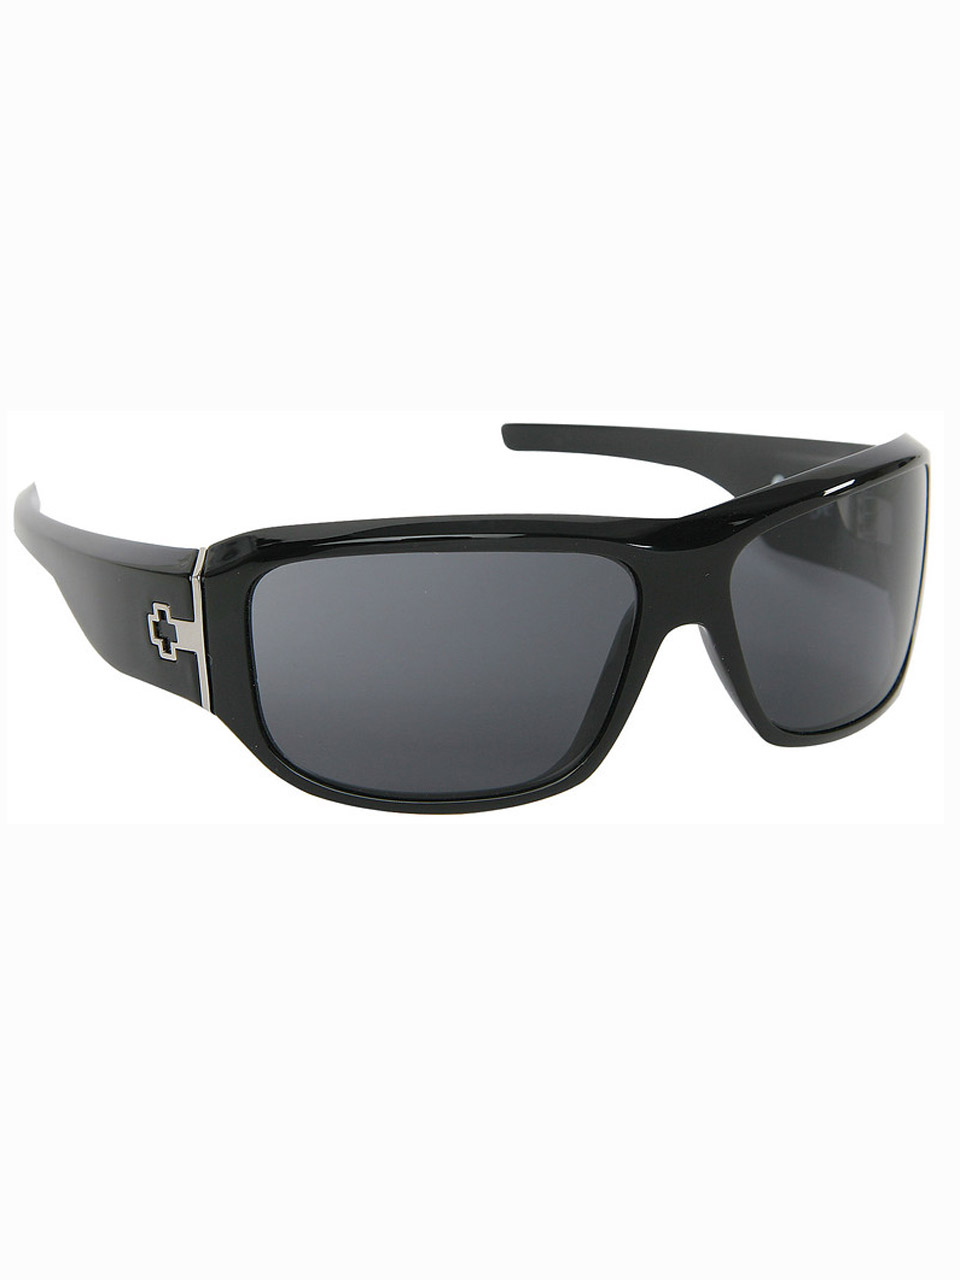 Sunglasses Spy Lacrosse Black 1